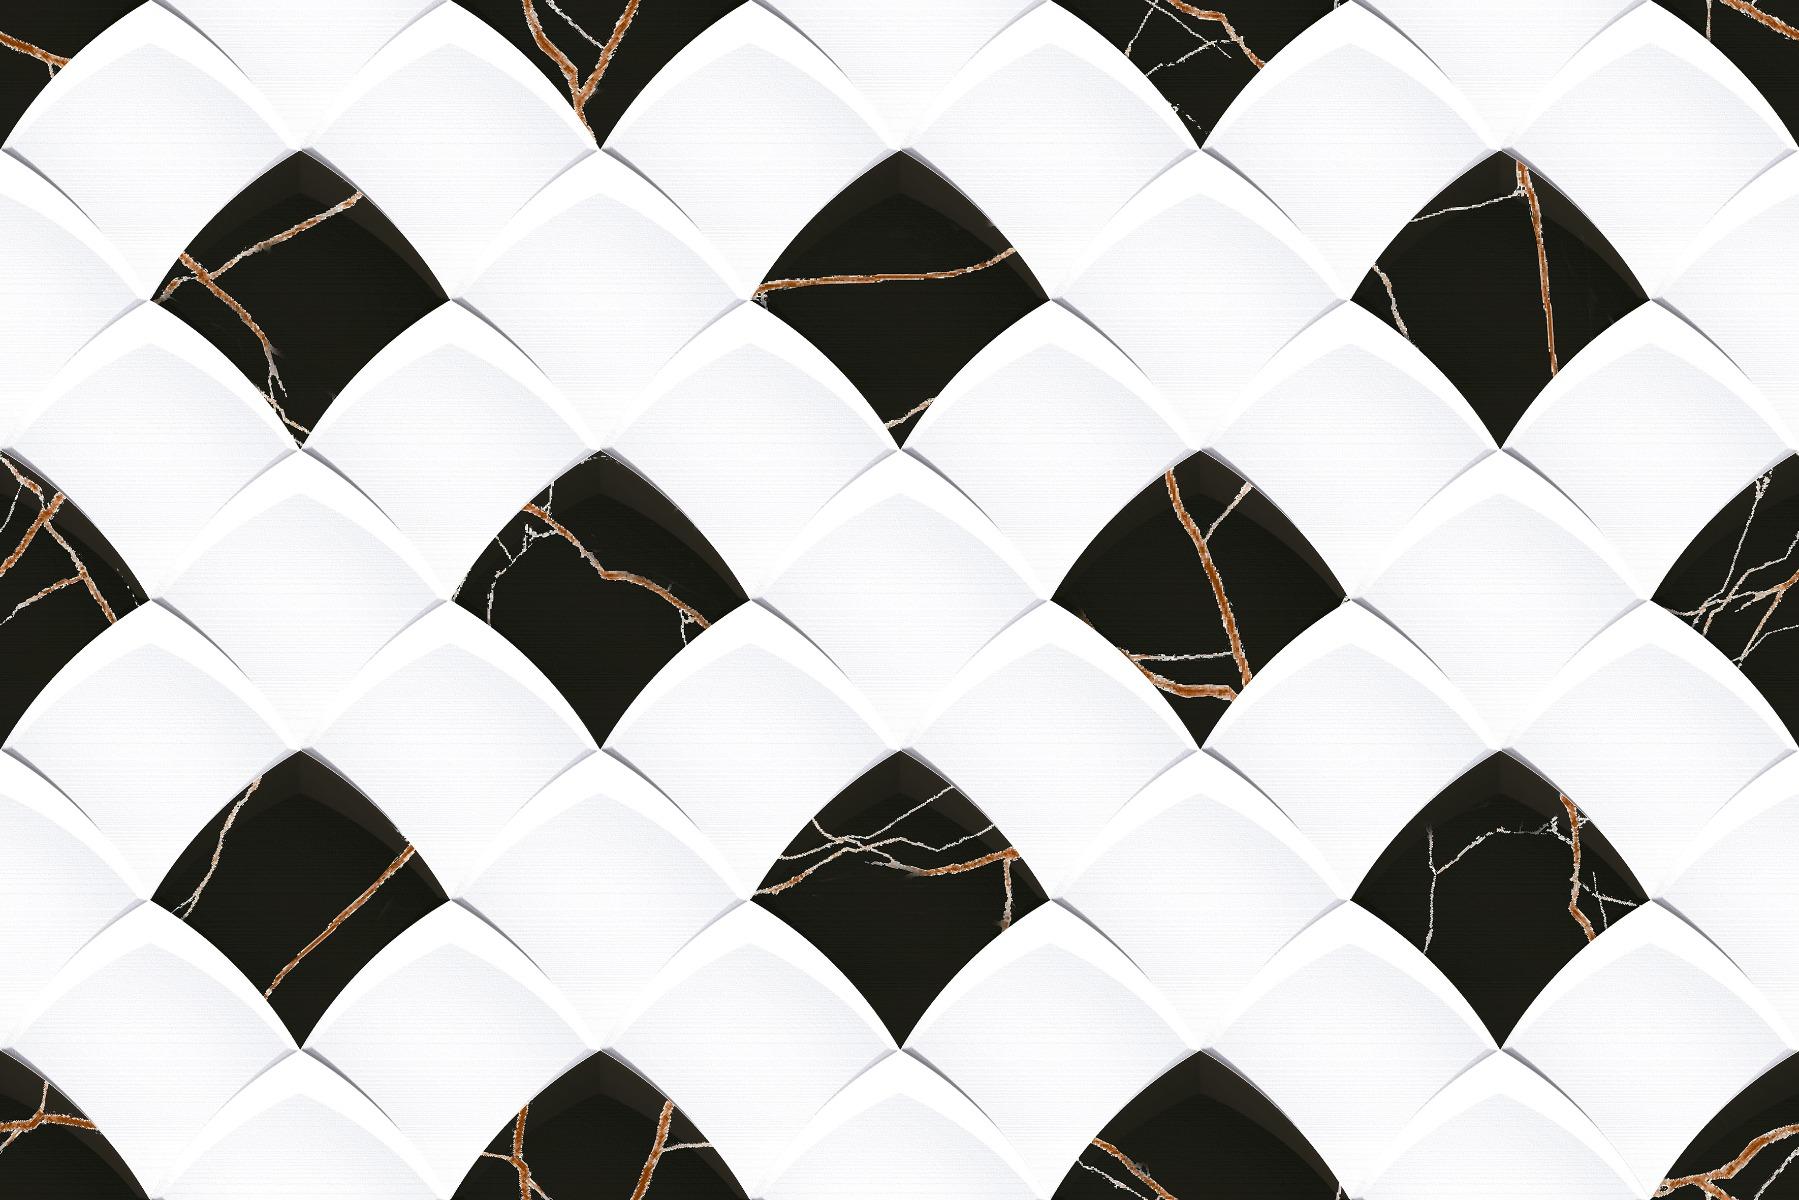 Vitrified Tiles for Bathroom Tiles, Living Room Tiles, Accent Tiles